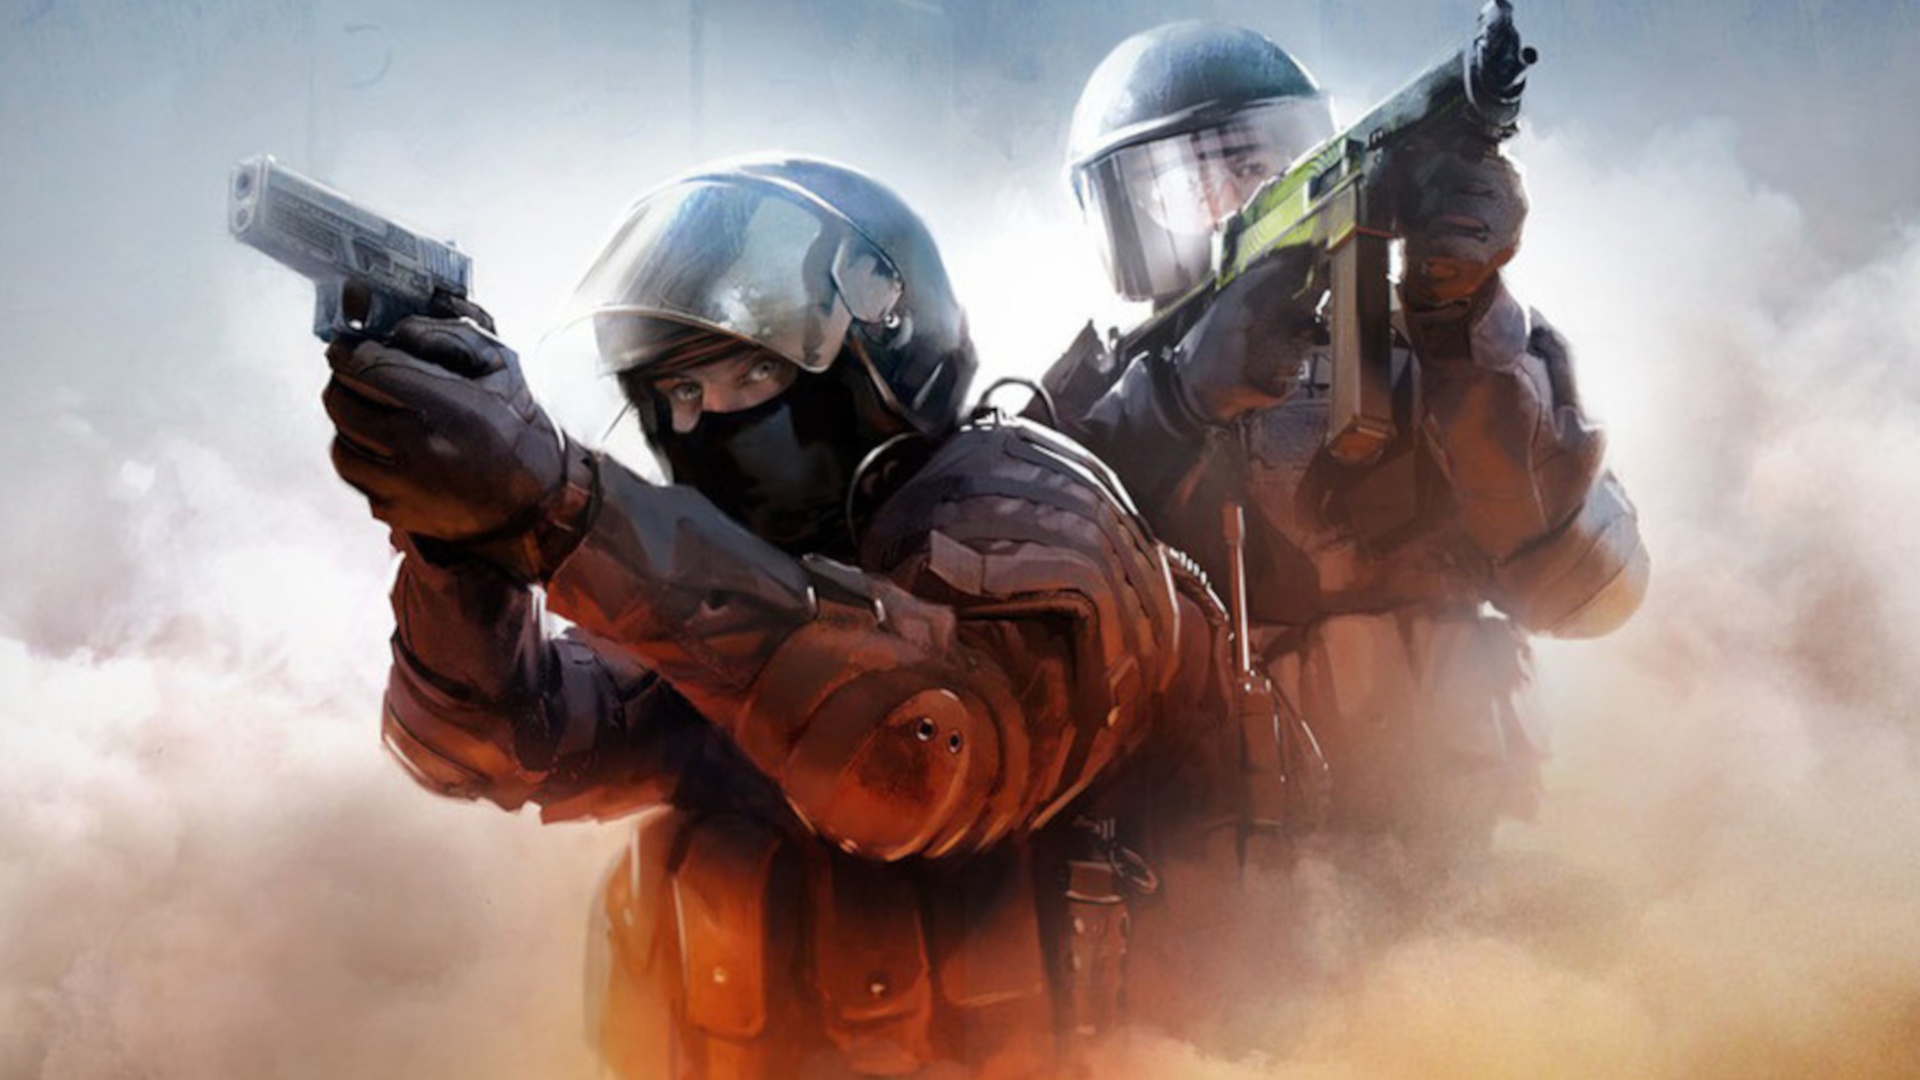 #Neuer Hinweis auf Counter-Strike 2: Valve sichert sich offenbar die Markenrechte